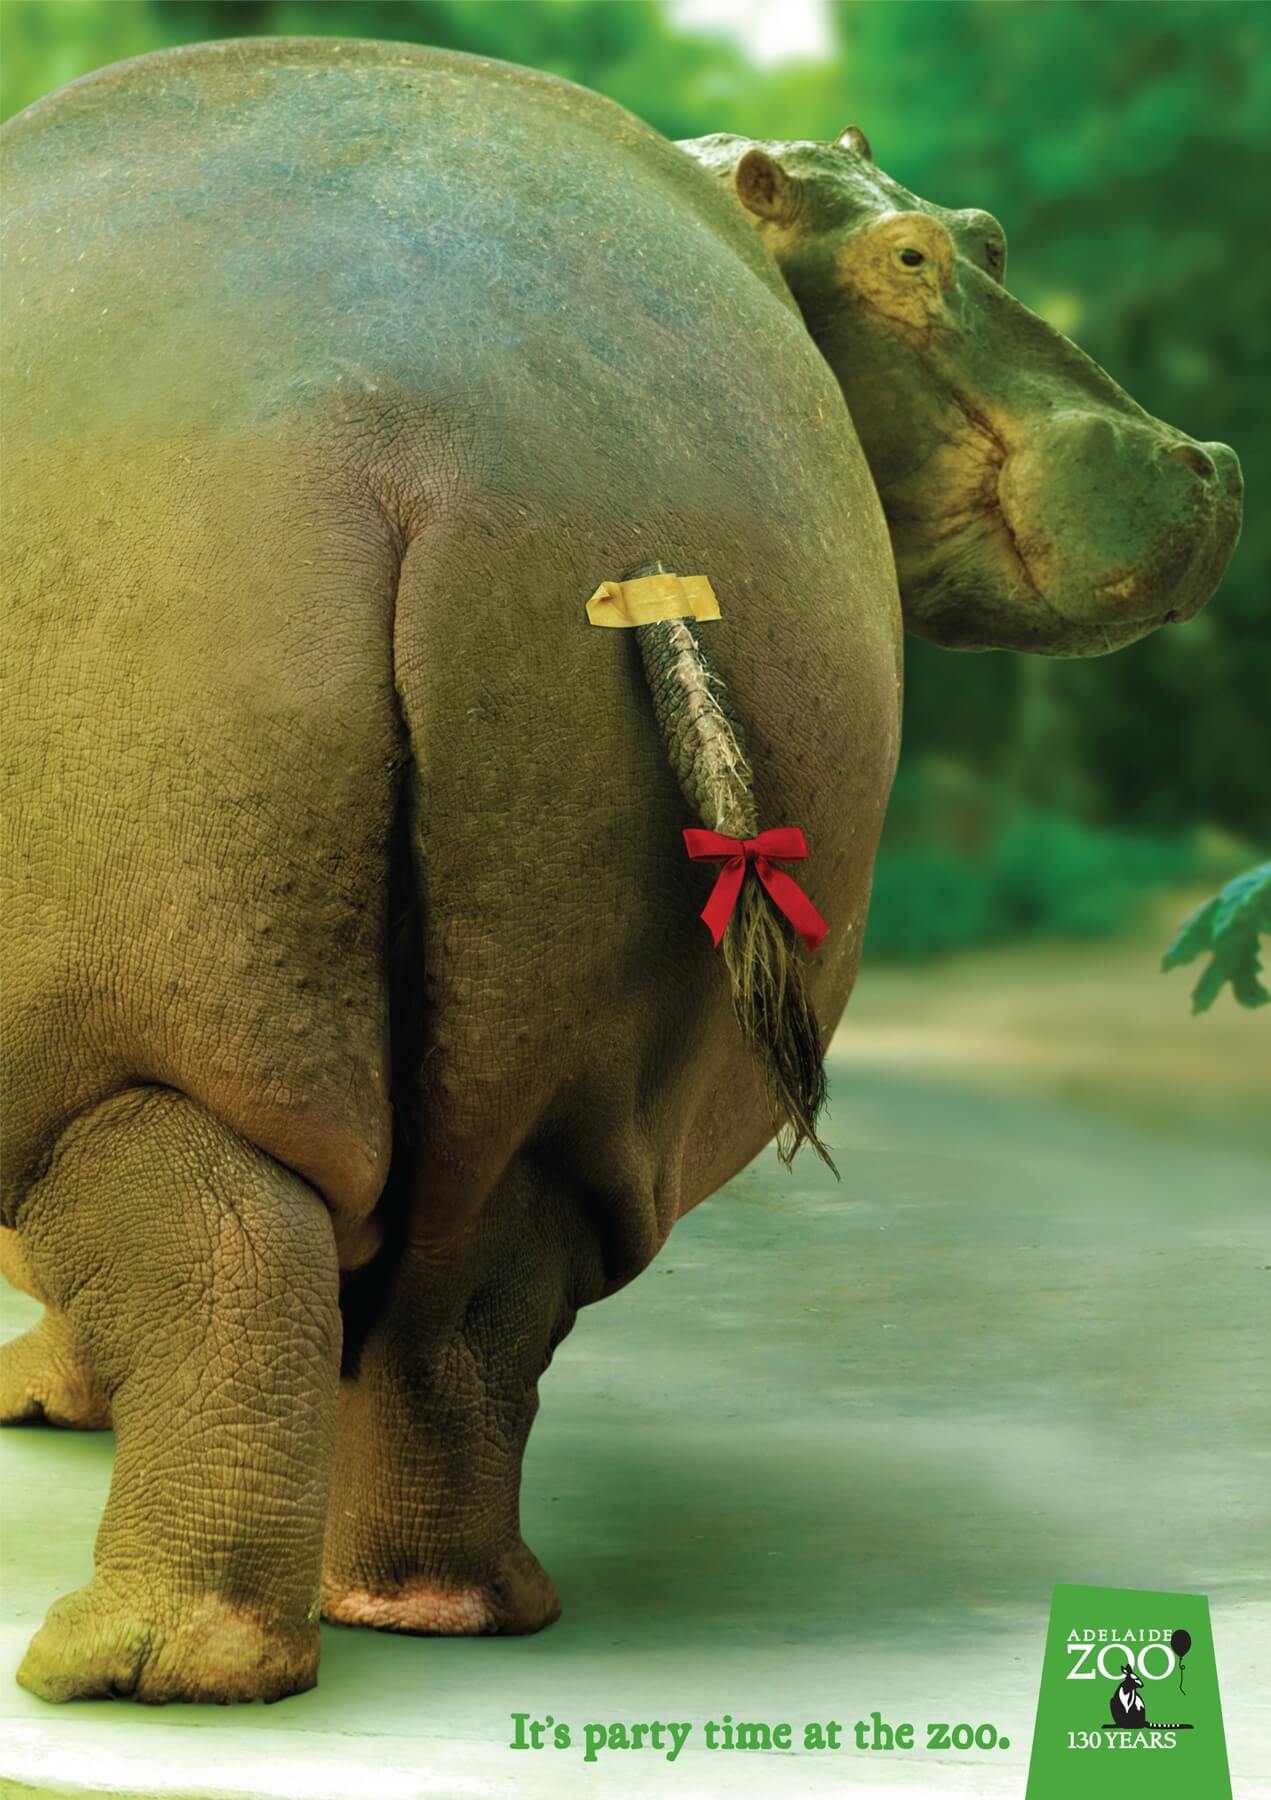 #CuandoLaPublicidad ¡Le pone la cola al hipopótamo!